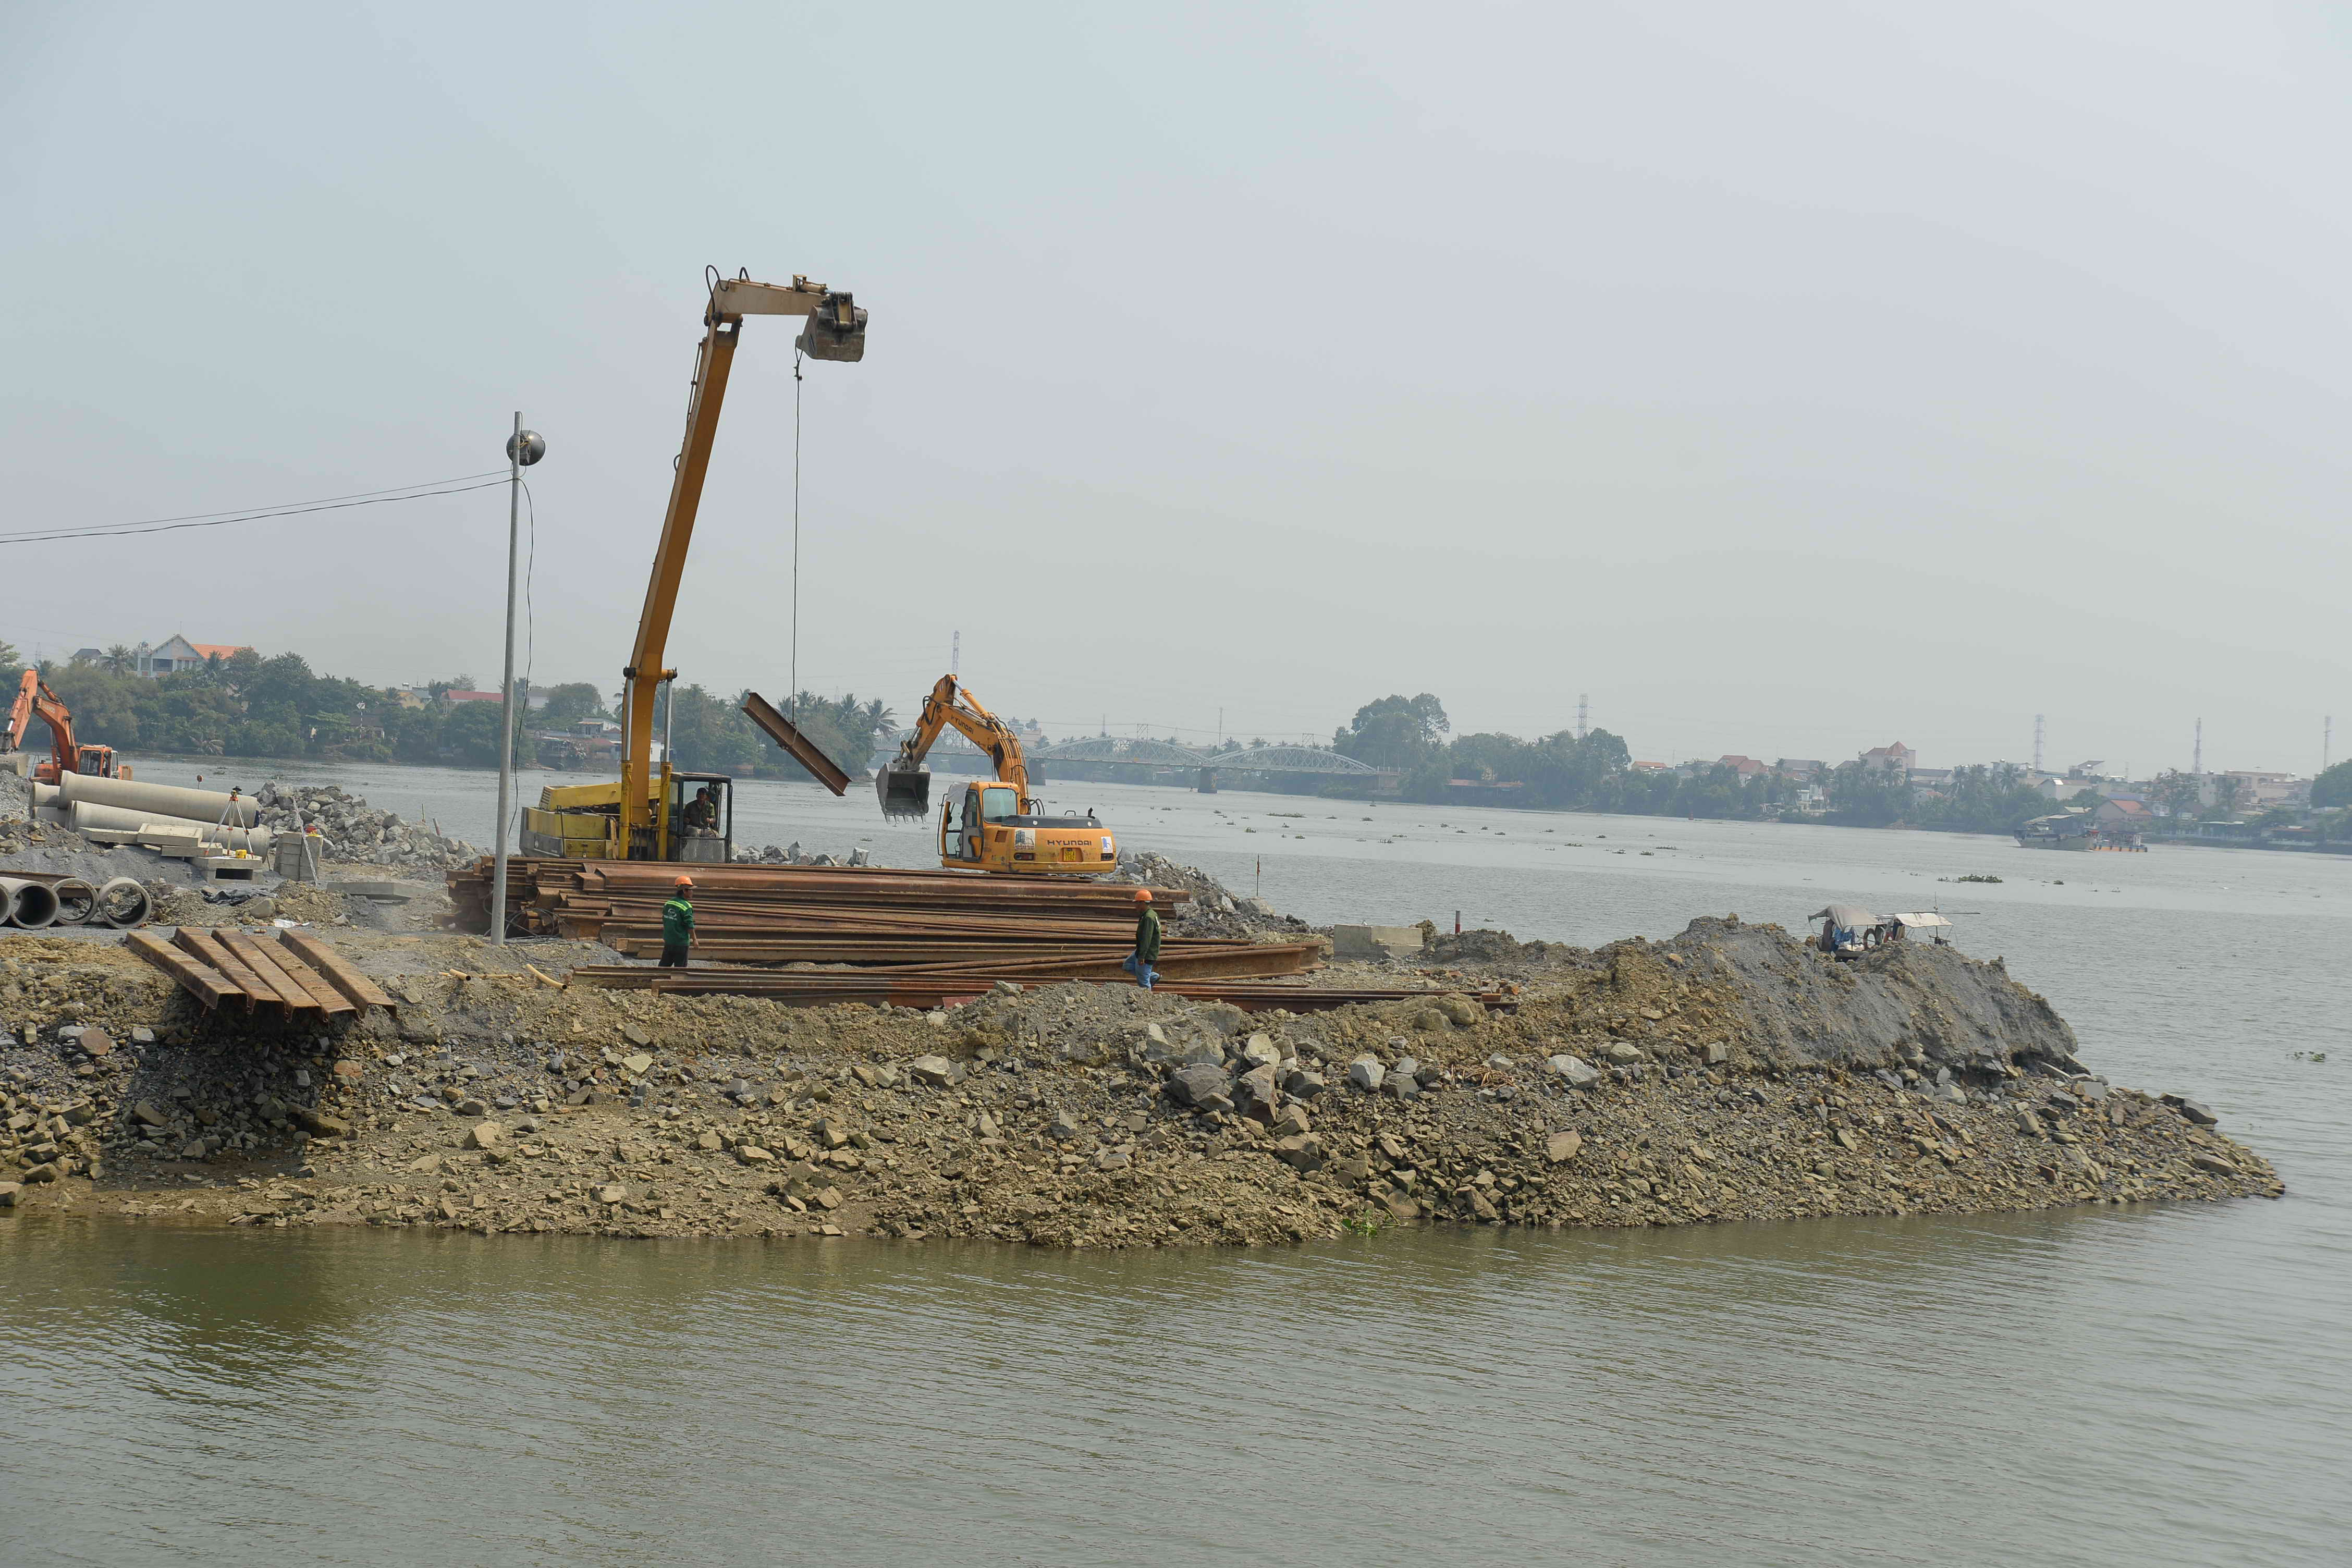 Tiếp tục yêu cầu hủy dự án lấp sông Đồng Nai